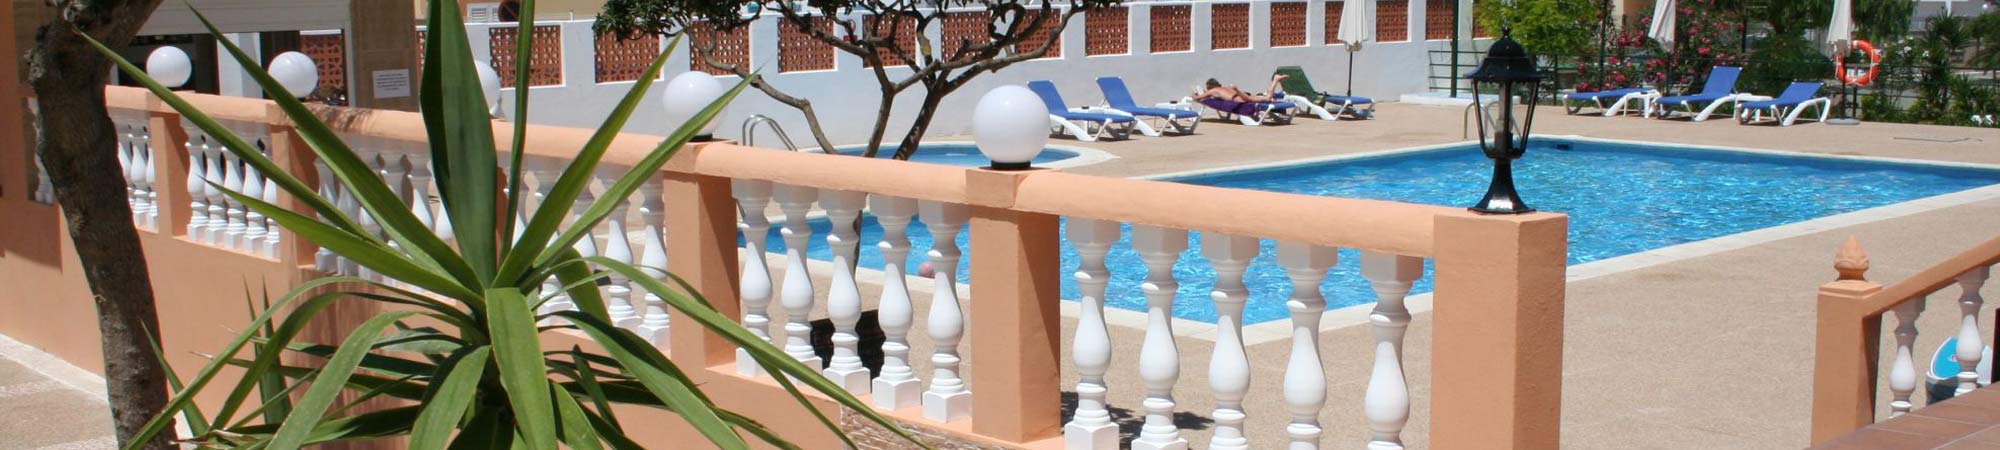 Hotel Tropicana Ibiza - Disfrute de sus vacaciones en Ibiza